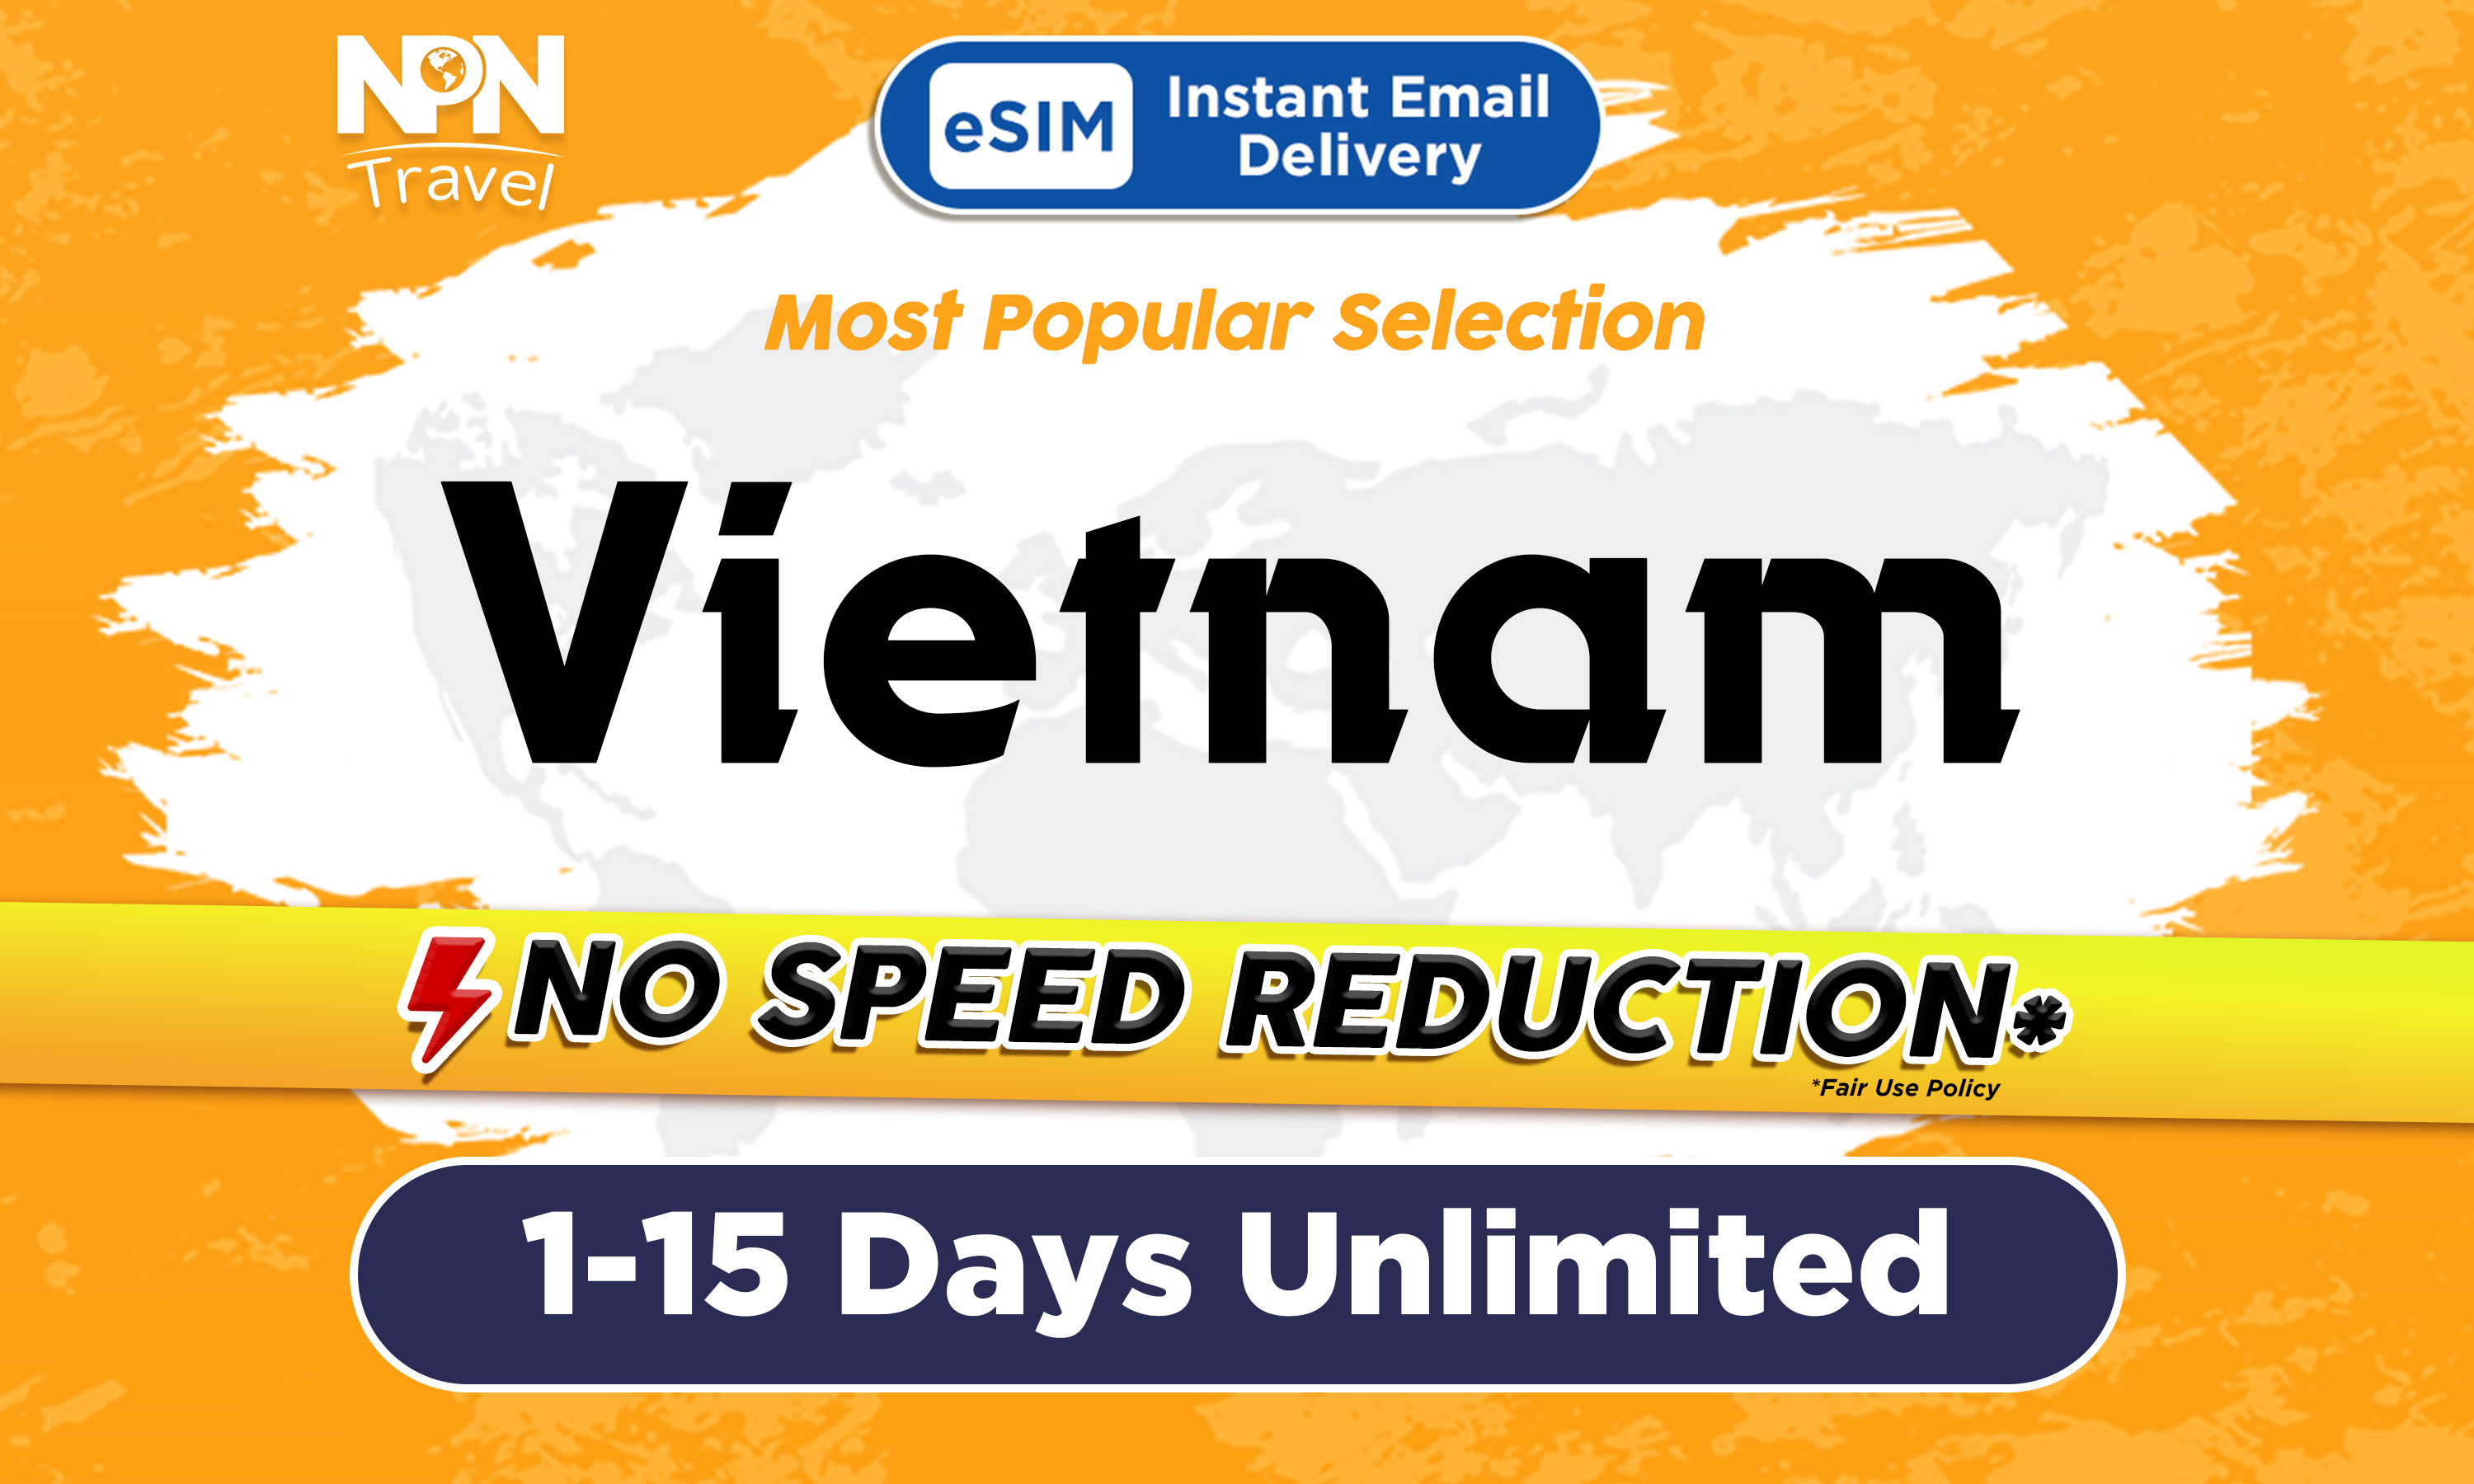 越南3 - 15天無限流量4G eSIM上網卡（500MB / 4GB）